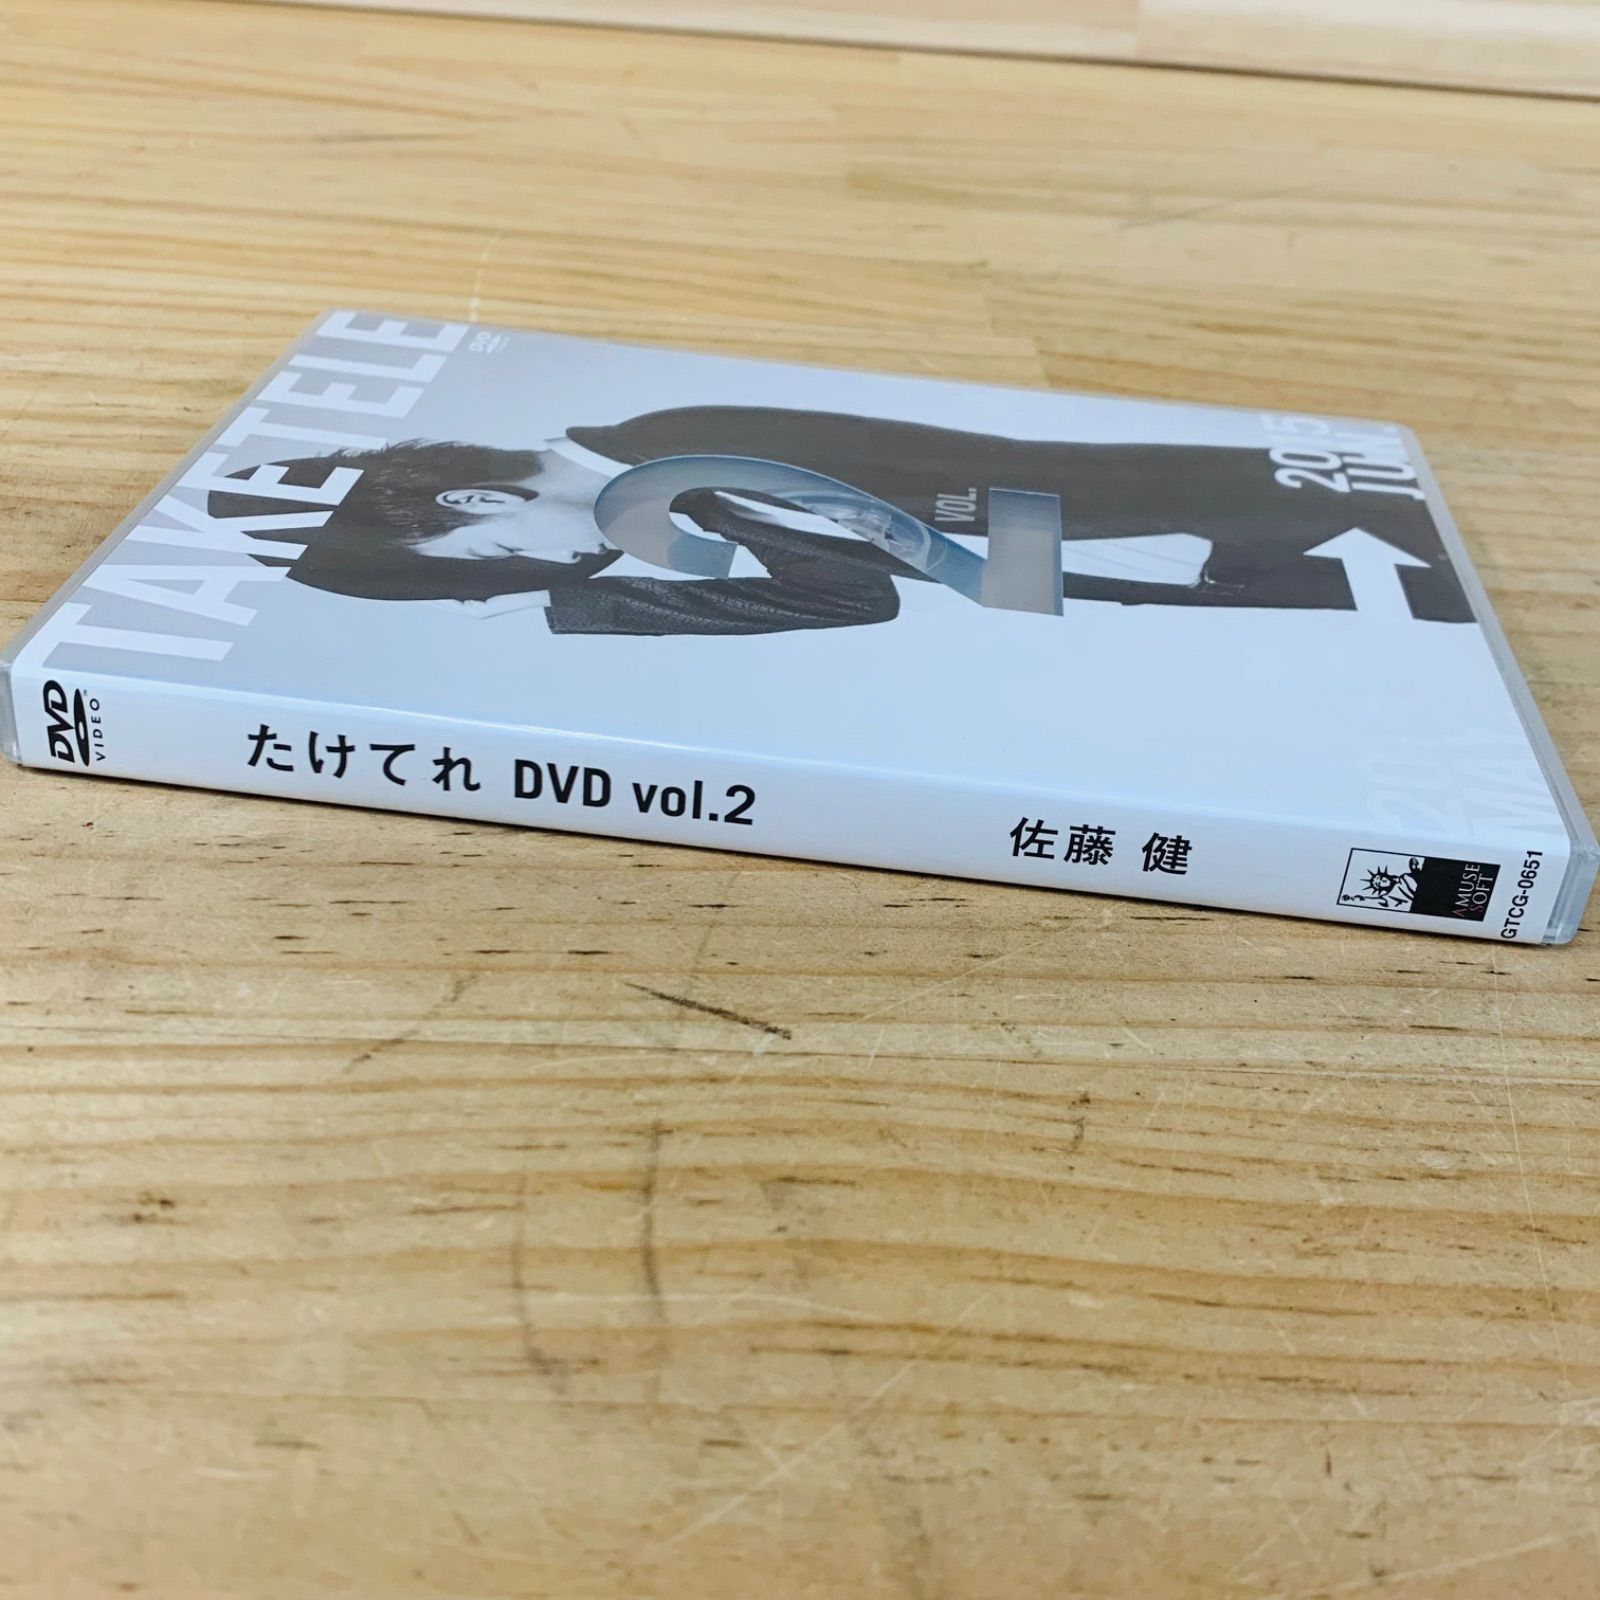 たけてれ DVD vol.5 佐藤健